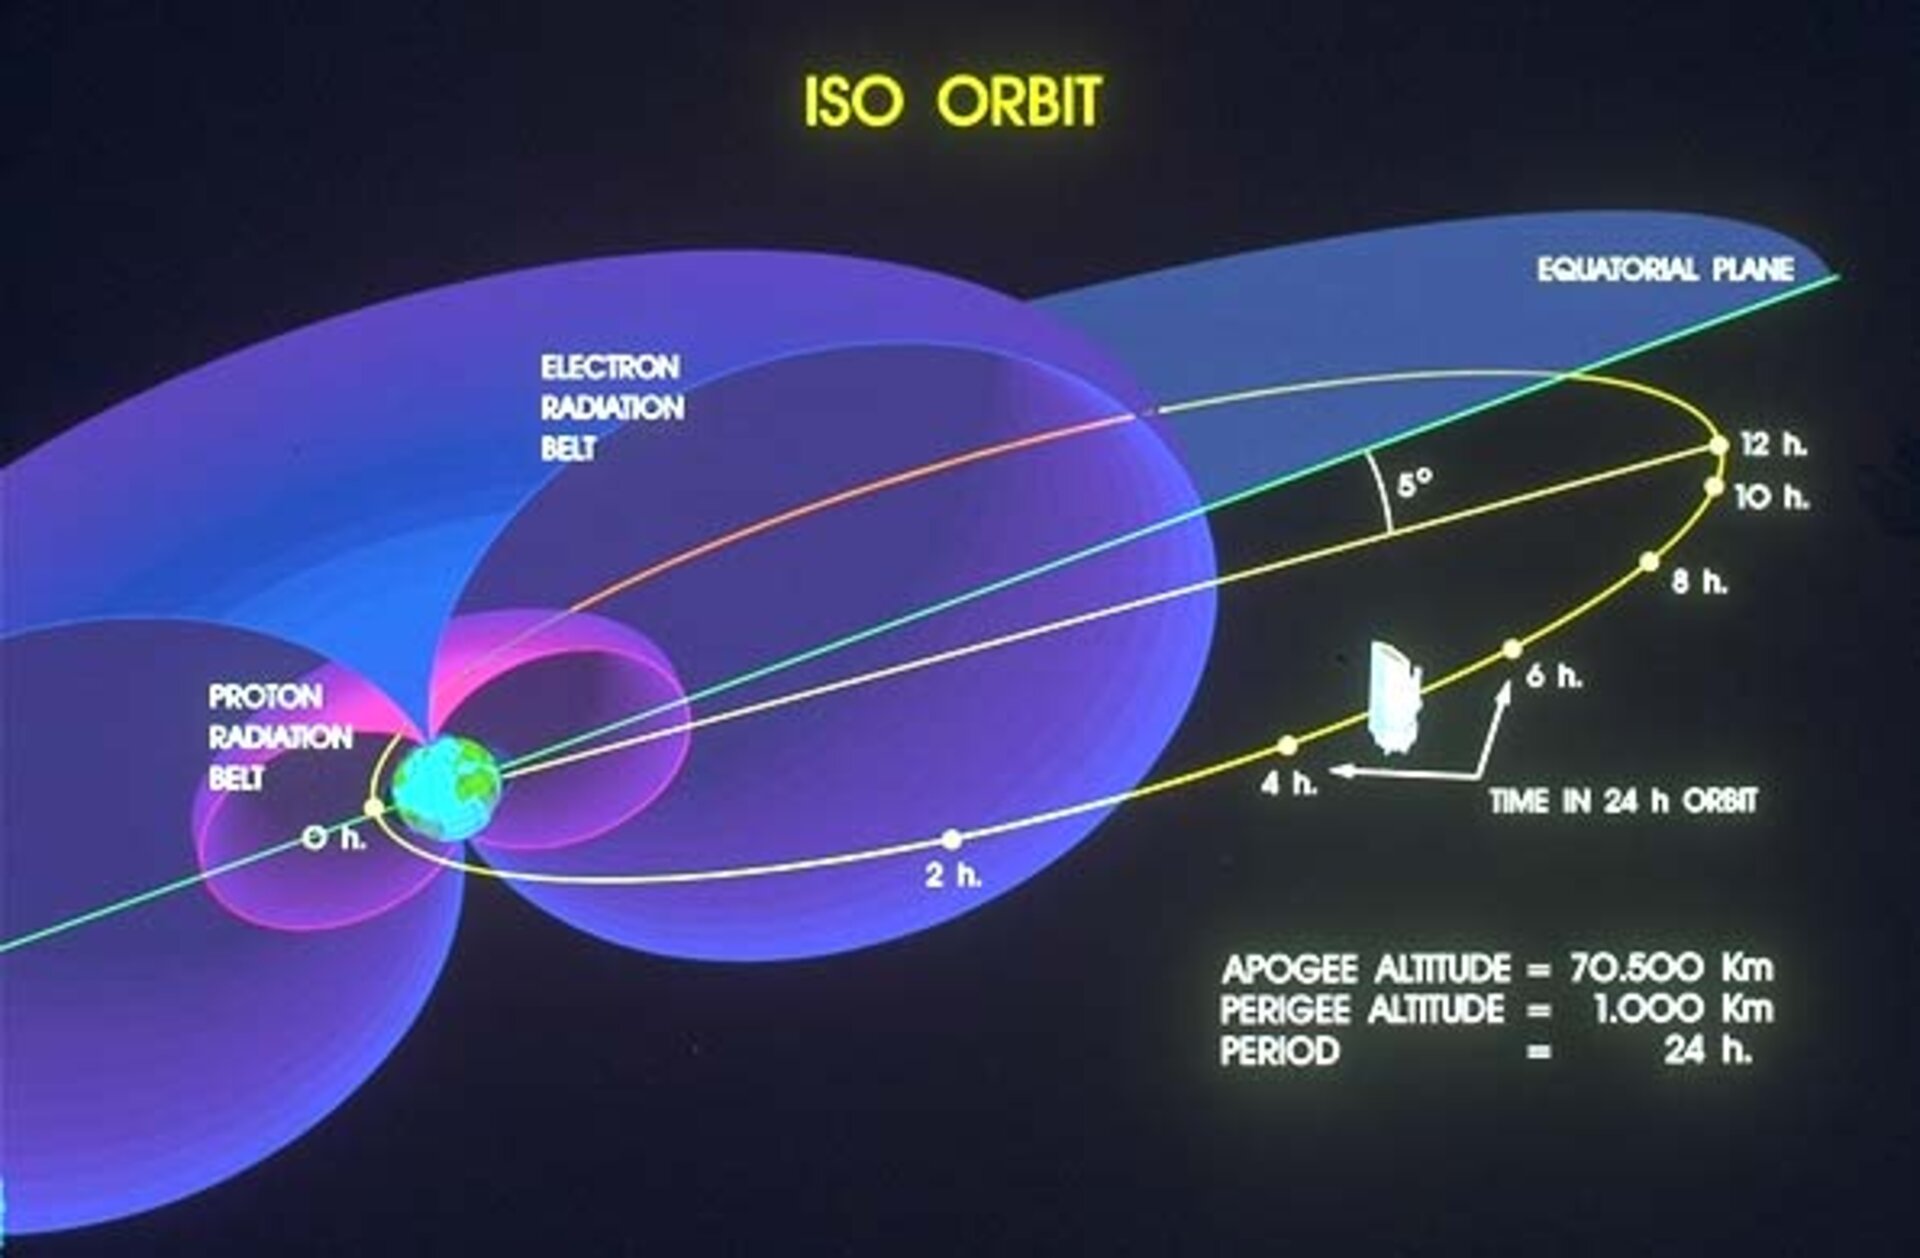 ISO's orbital path